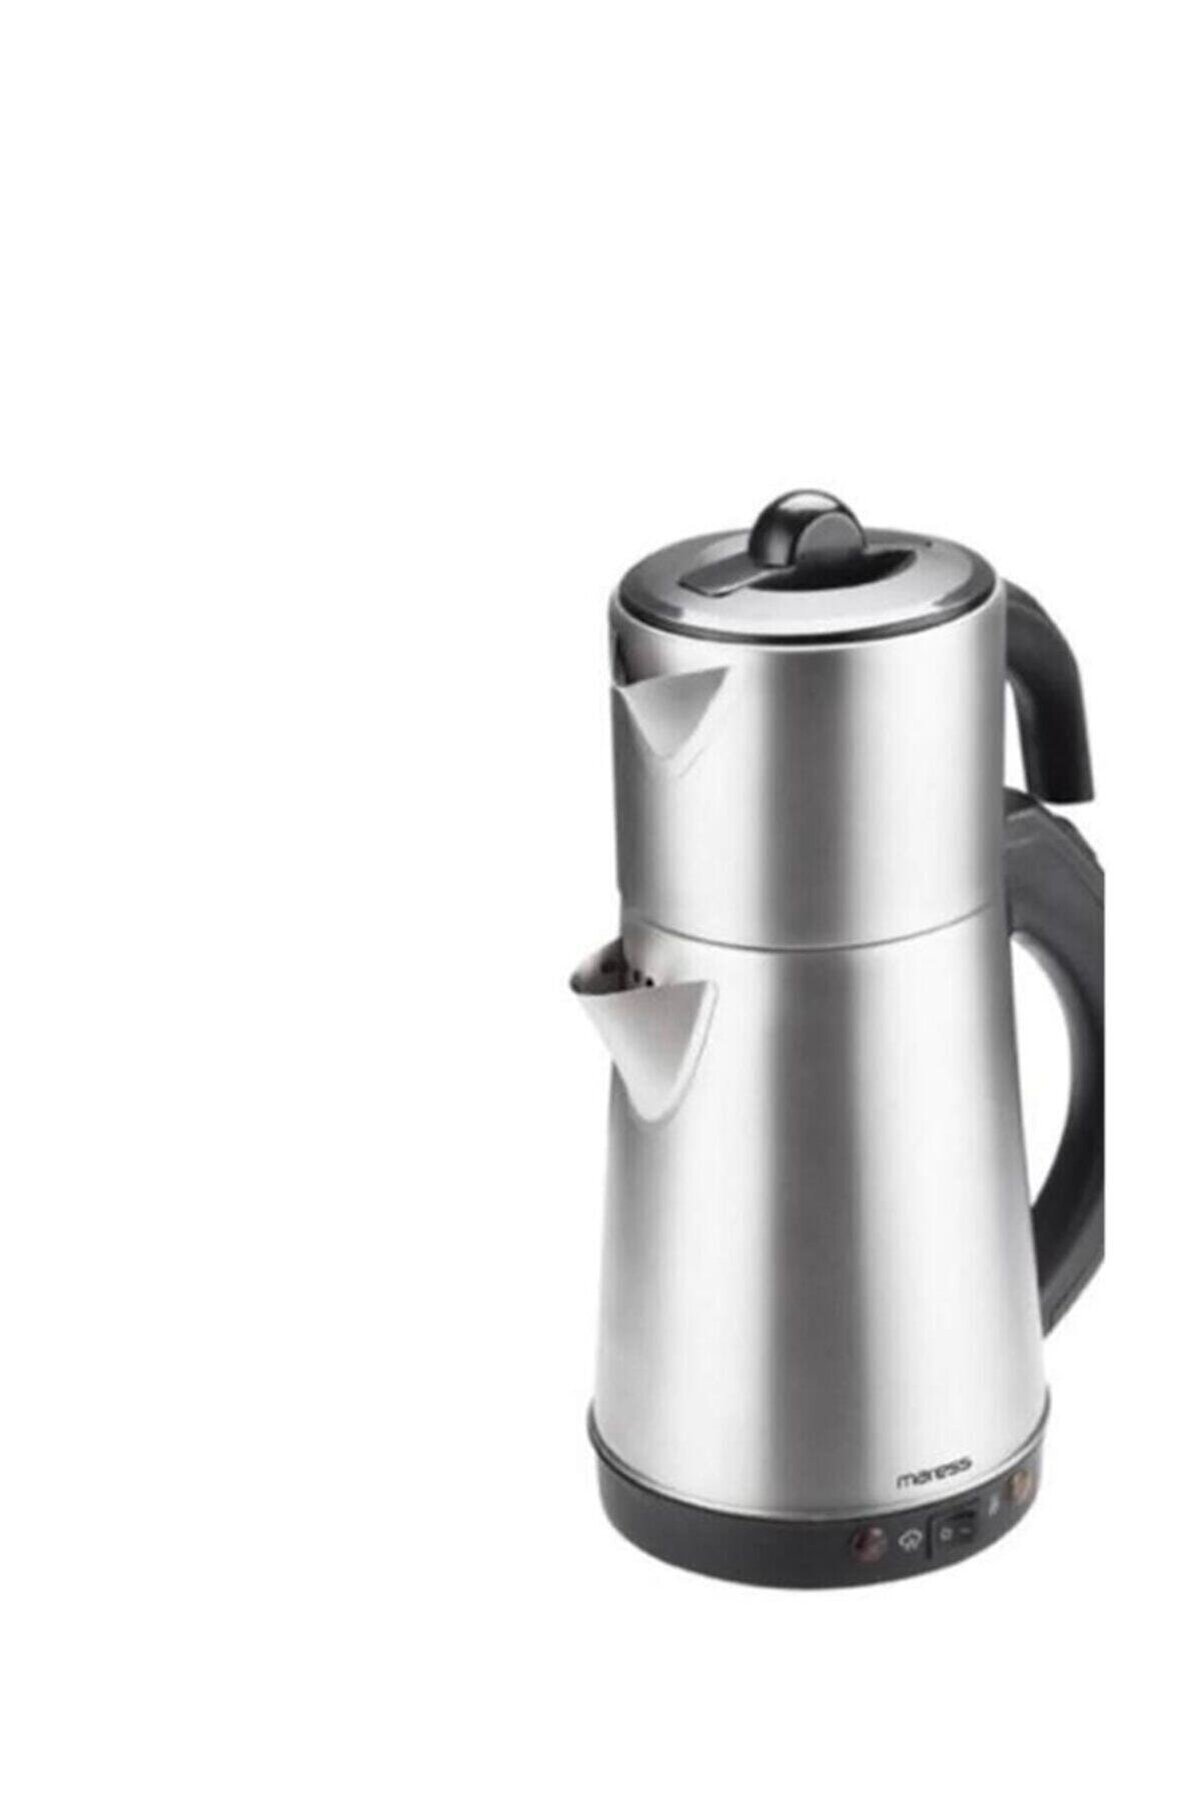 Teba Conti Inox Çelik Çay Makinası 2 Yıl Garantili